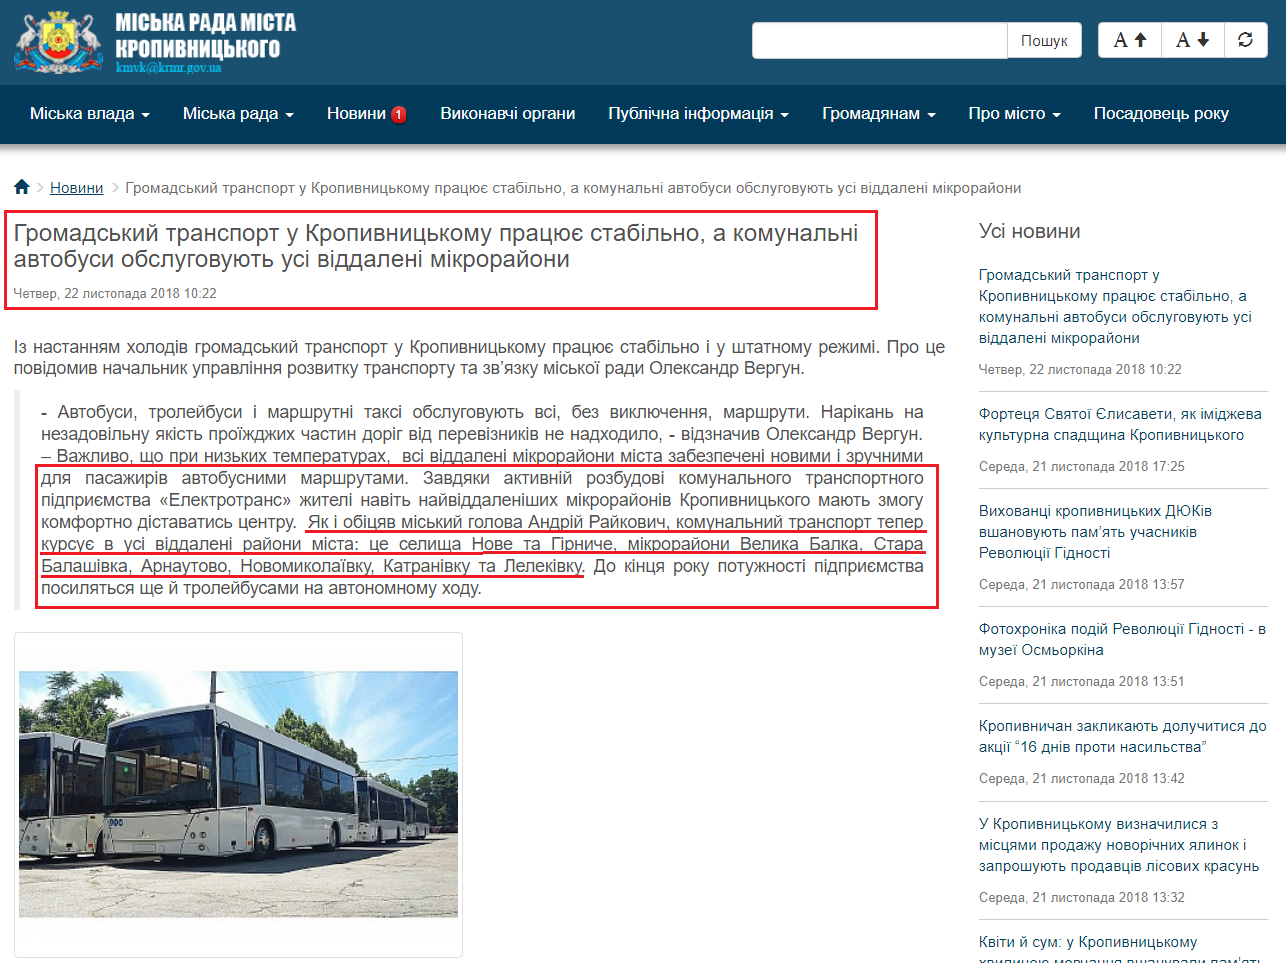 http://www.kr-rada.gov.ua/news/gromadskiy-transport-u-kropivnitskomu-pratsyu-stabilno-a-komunalni-avtobusi-obslugovuyut-usi-viddaleni-mikrorayoni.html